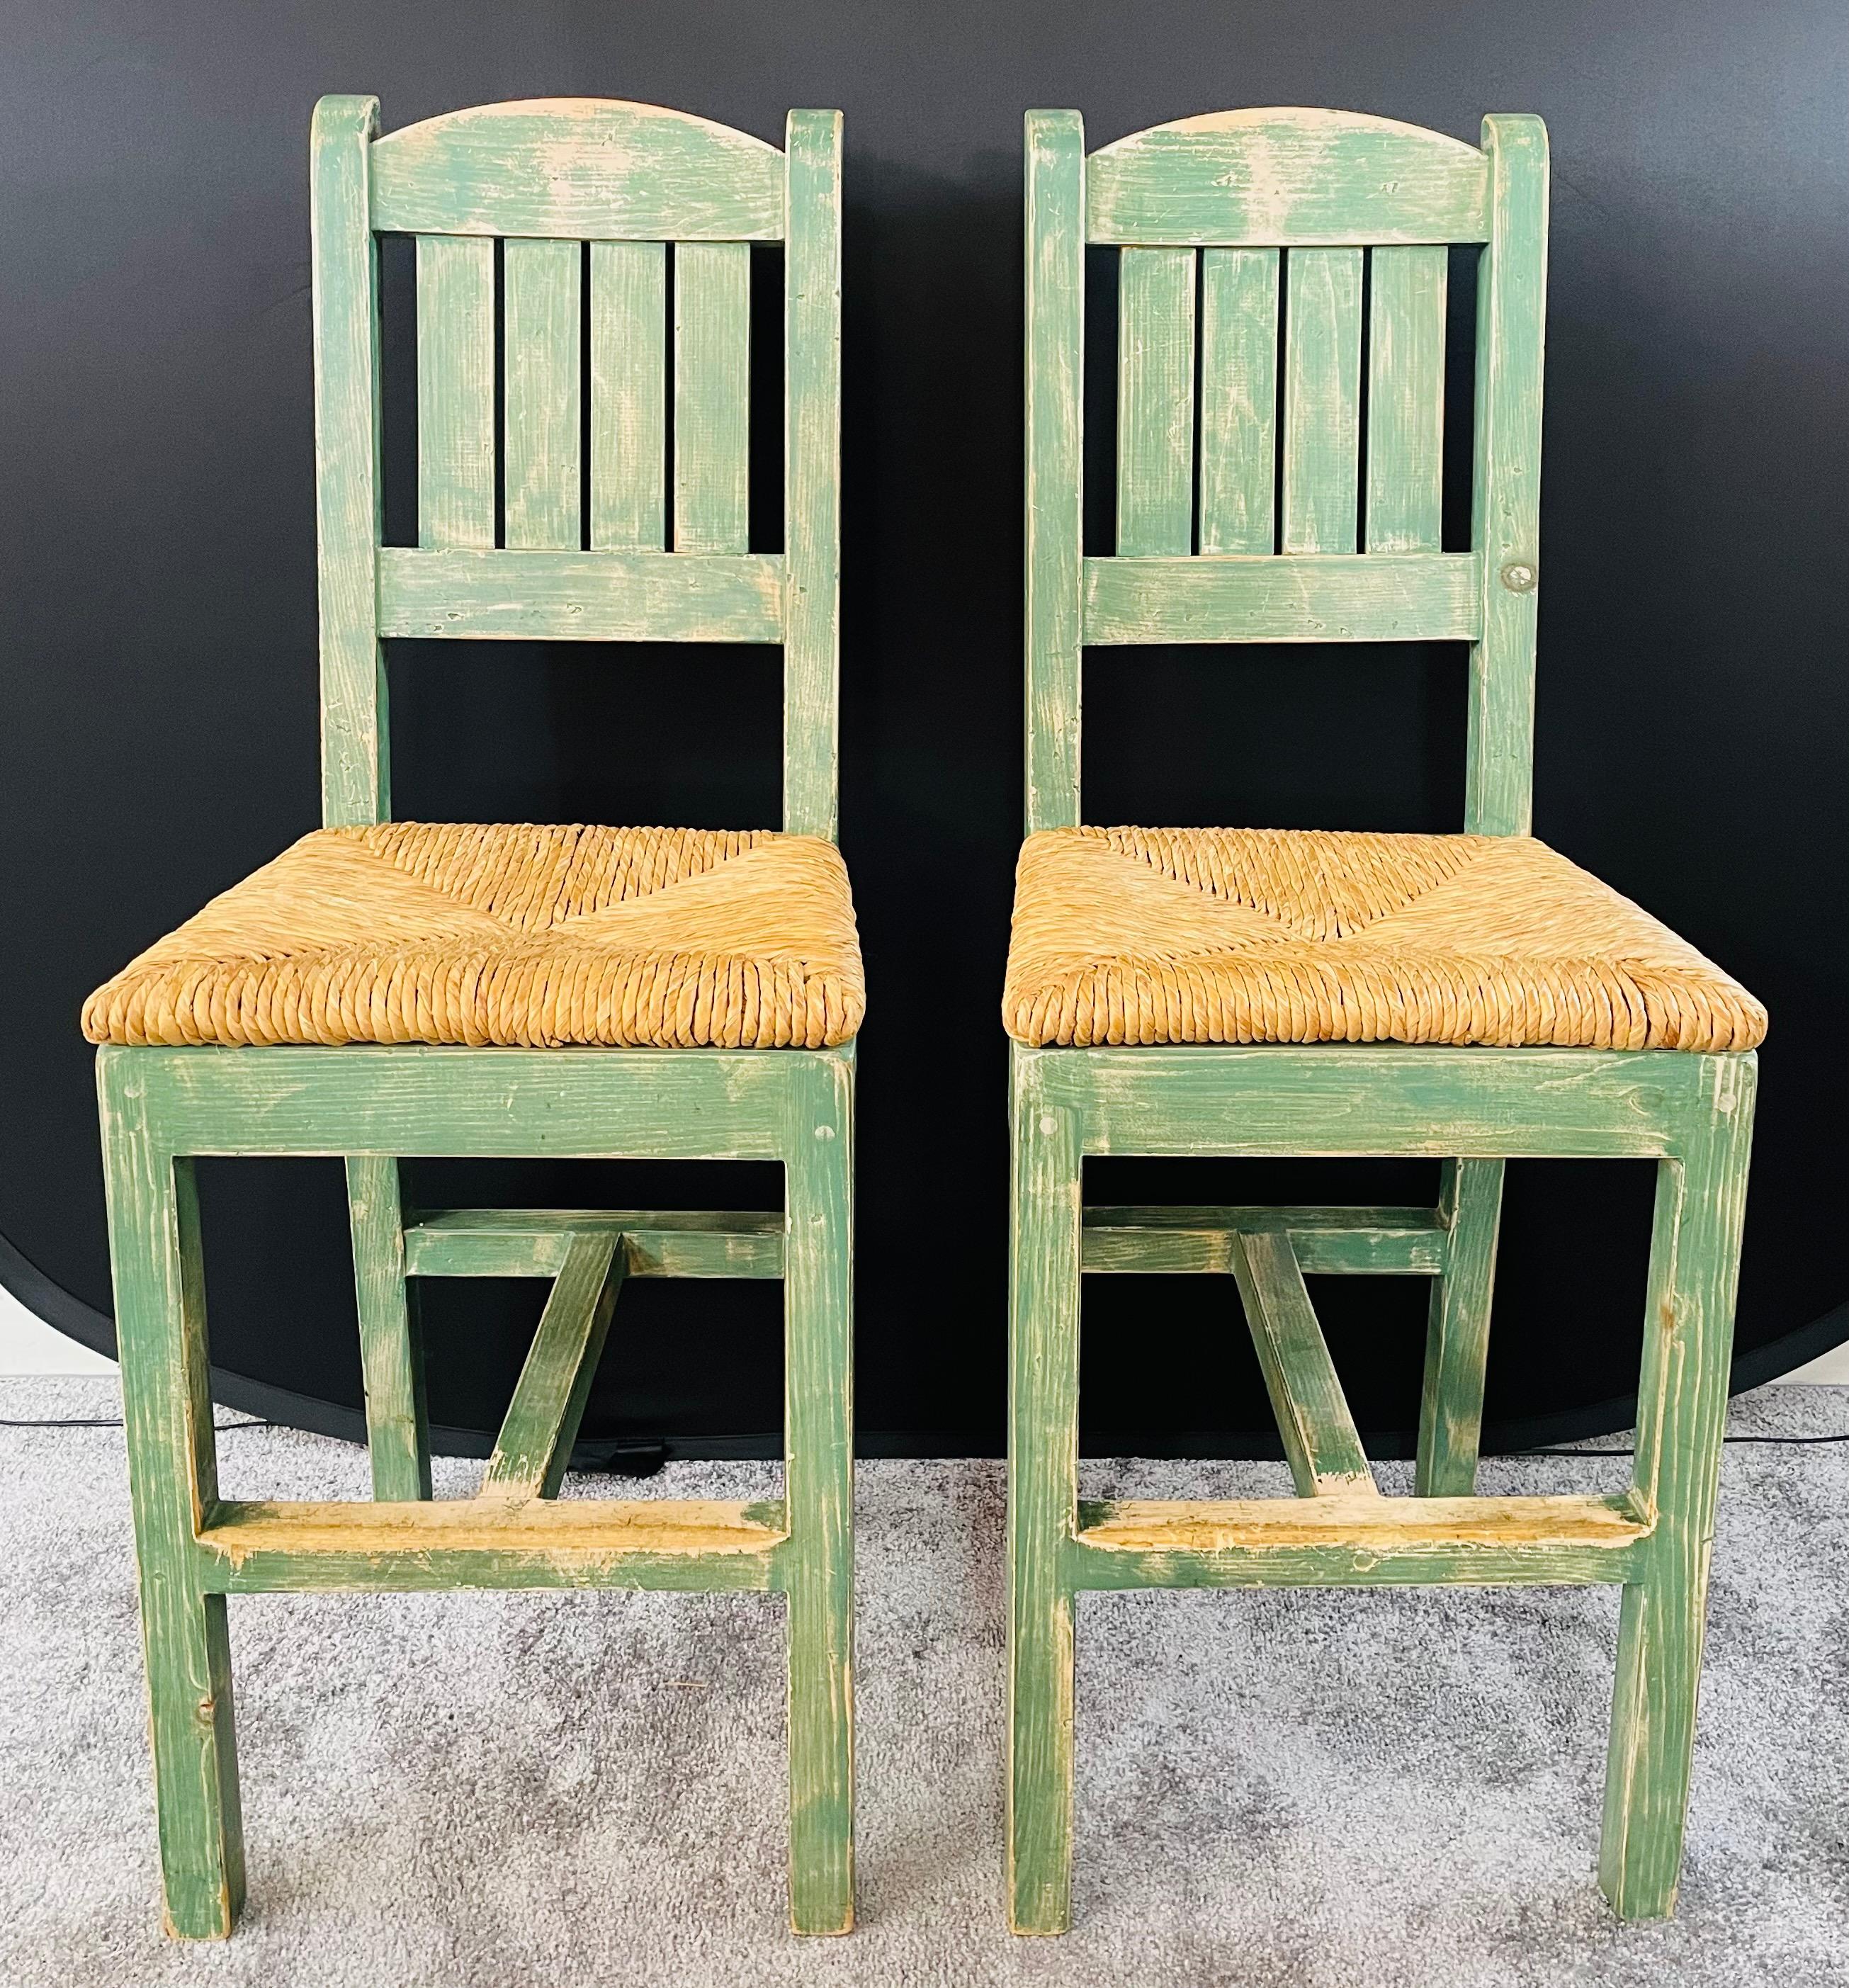 Une paire exquise de tabourets de bar français vintage de style rustique, avec un siège en paille et une couleur vert turquoise. Le cadre du tabouret est en bois et le siège en paille tressée à la main est fait d'un joli motif de triangles. Ces